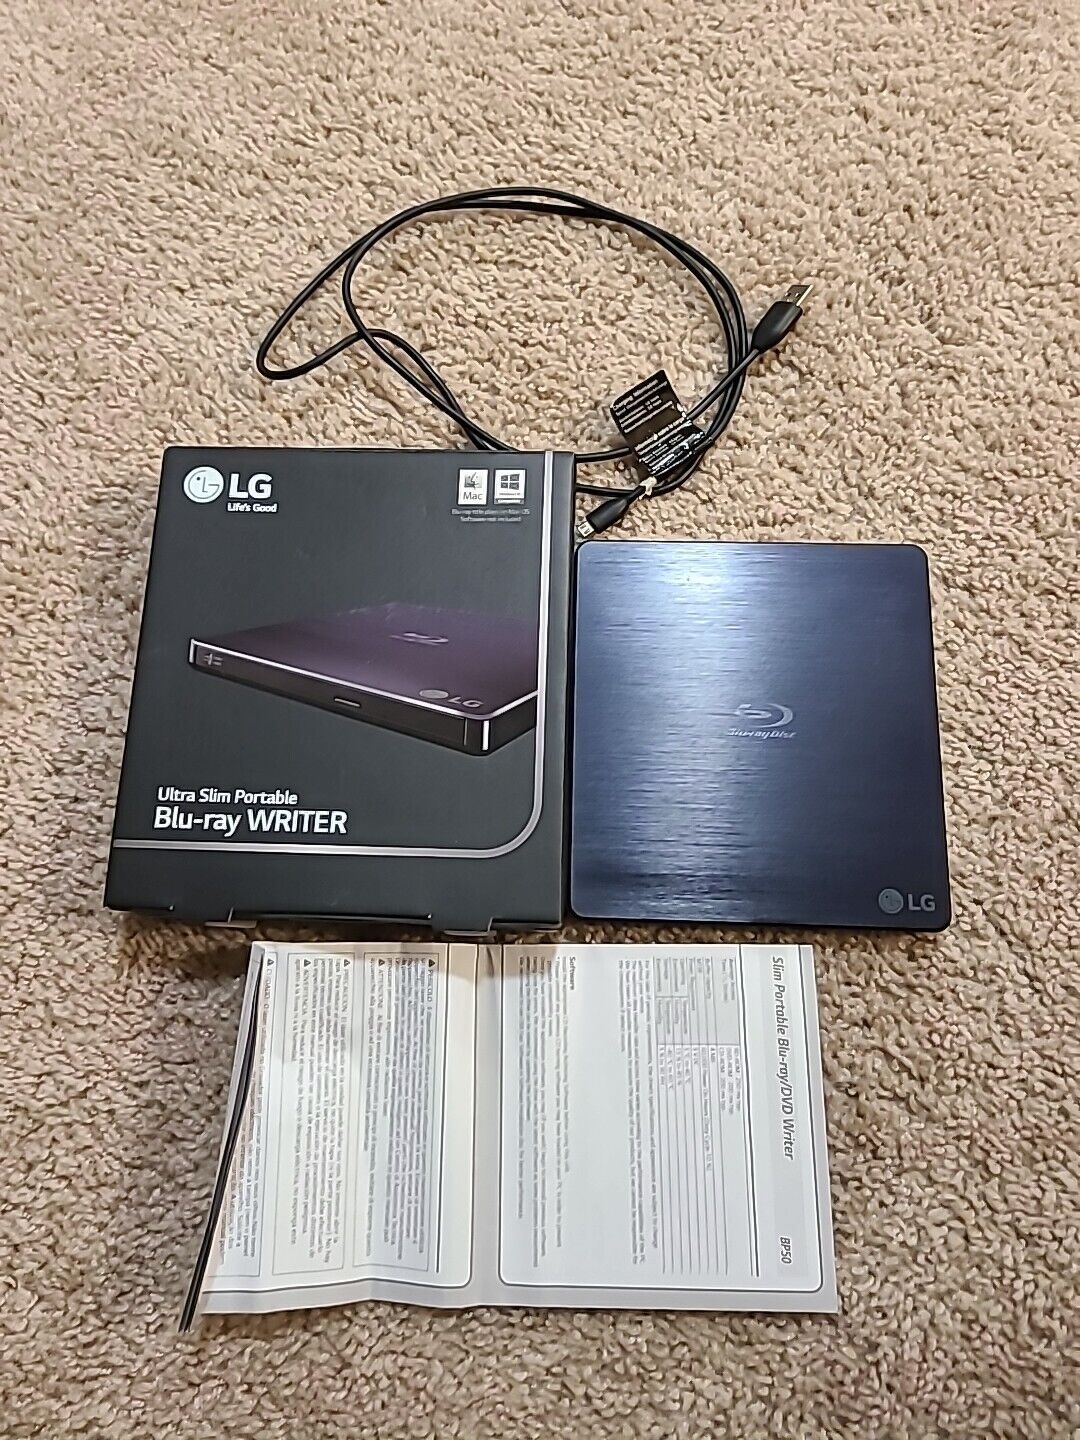 LG BP50NB40 USB 2.0 Slim Portable Blu-ray/ DVD Writer - Black USED